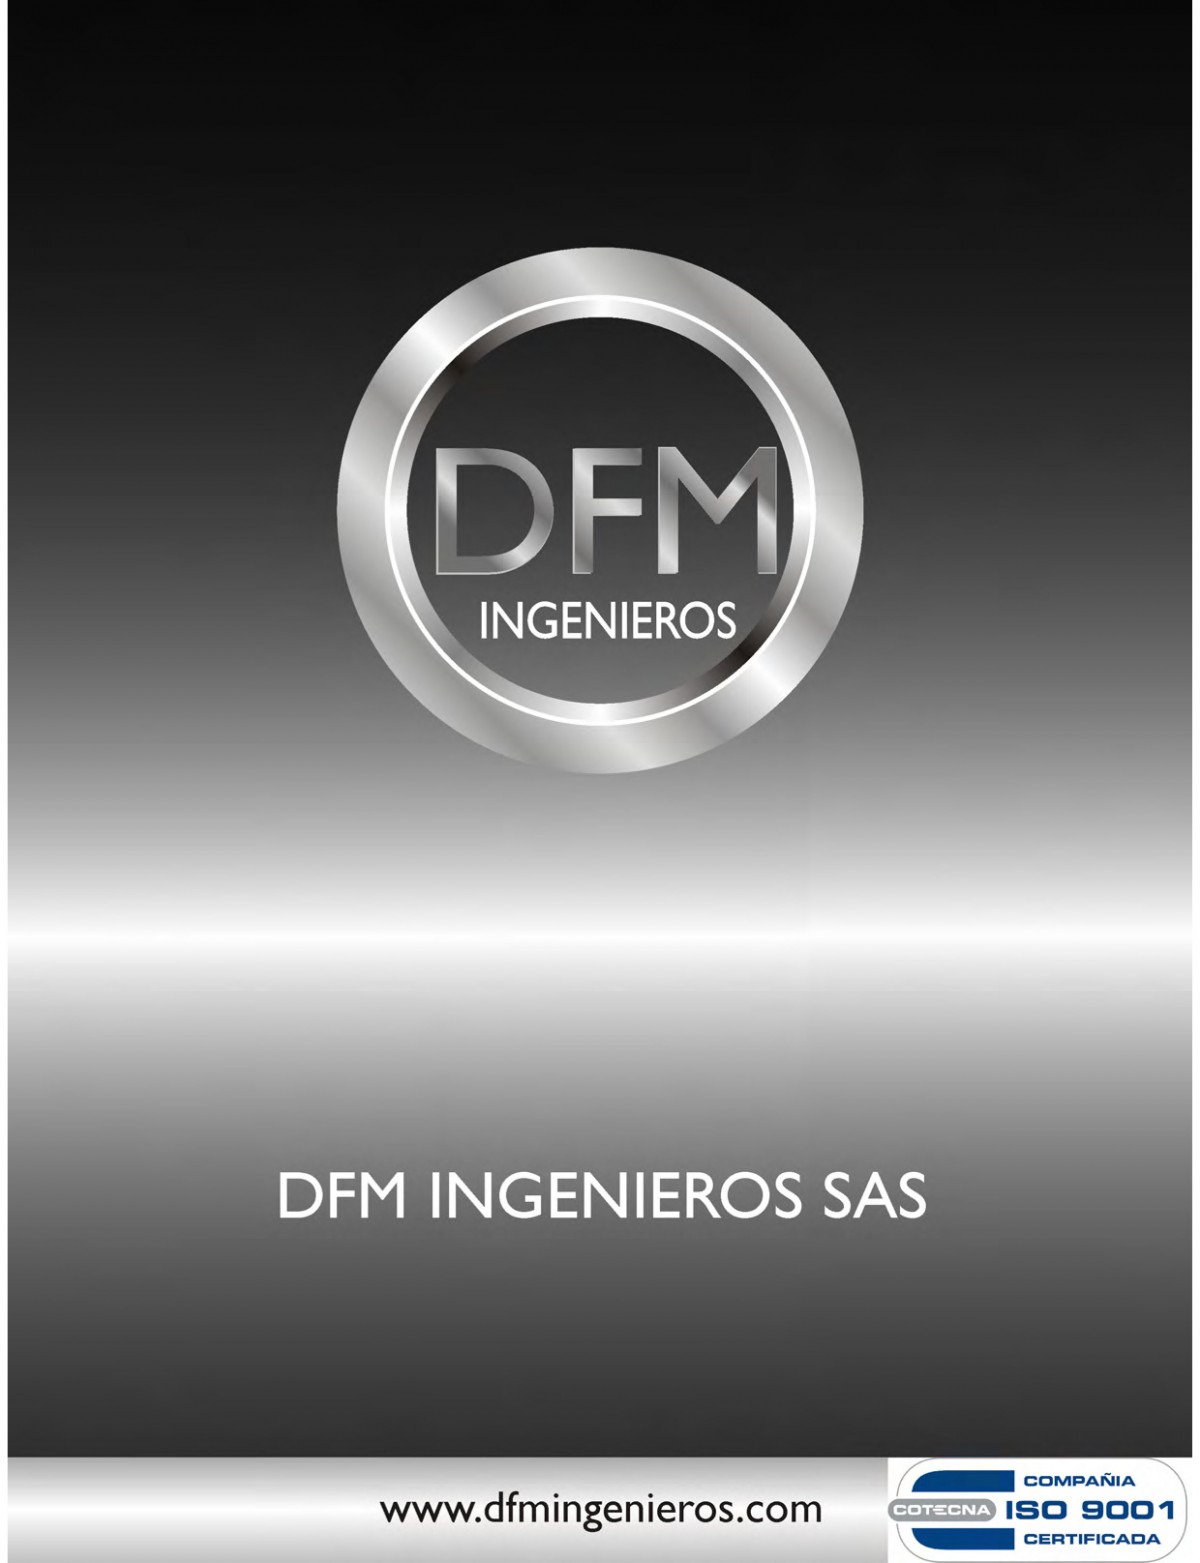 www.dfmingenieros.com